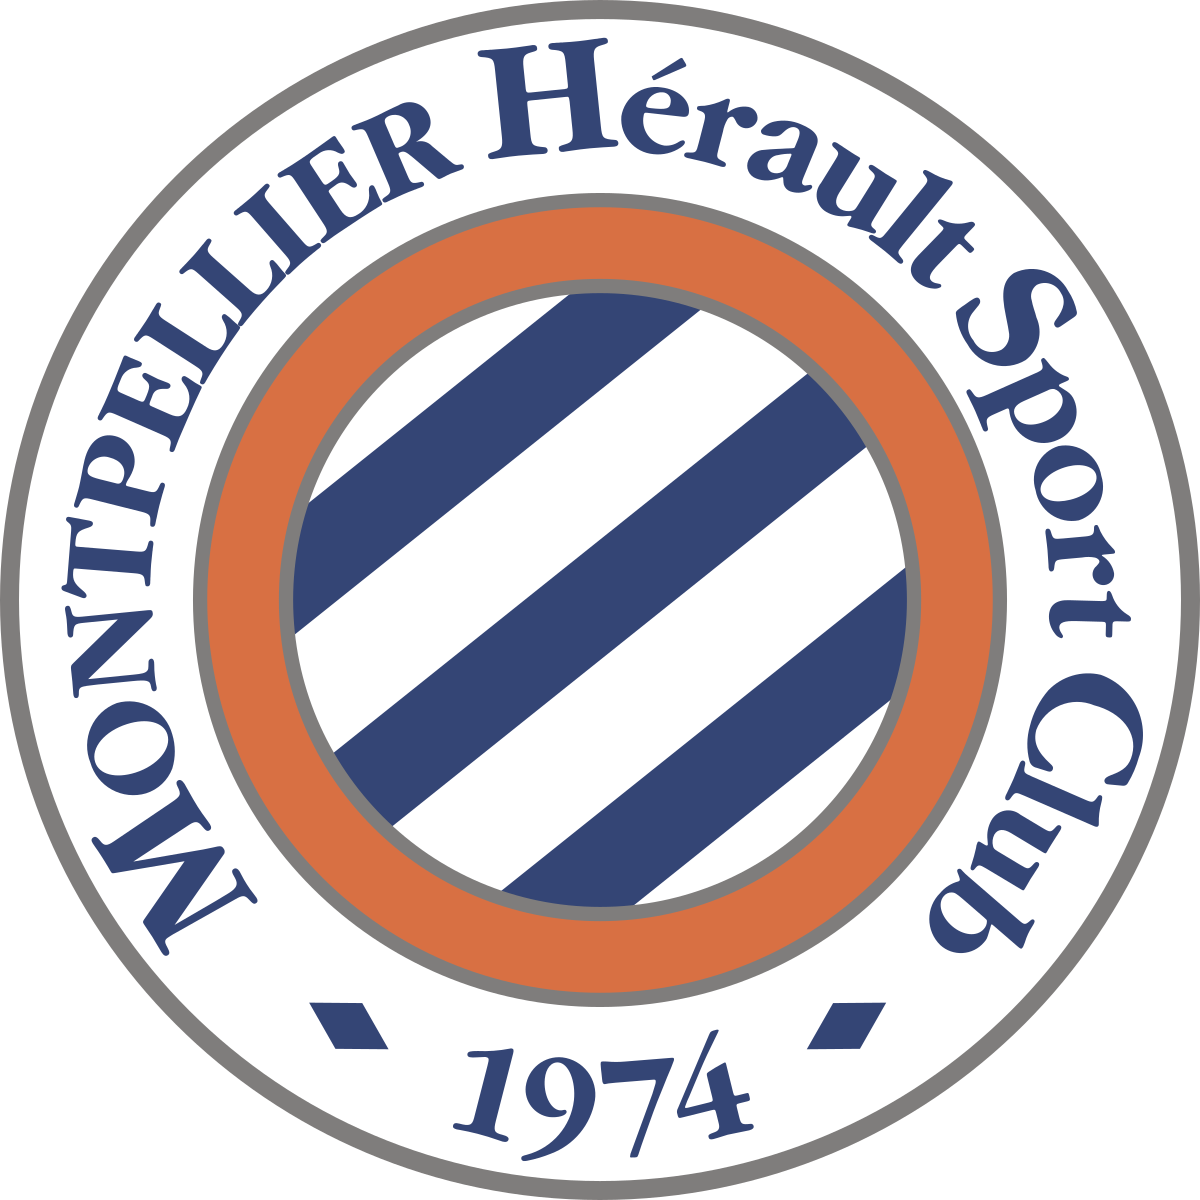 Montpellier HSC (MHSC)